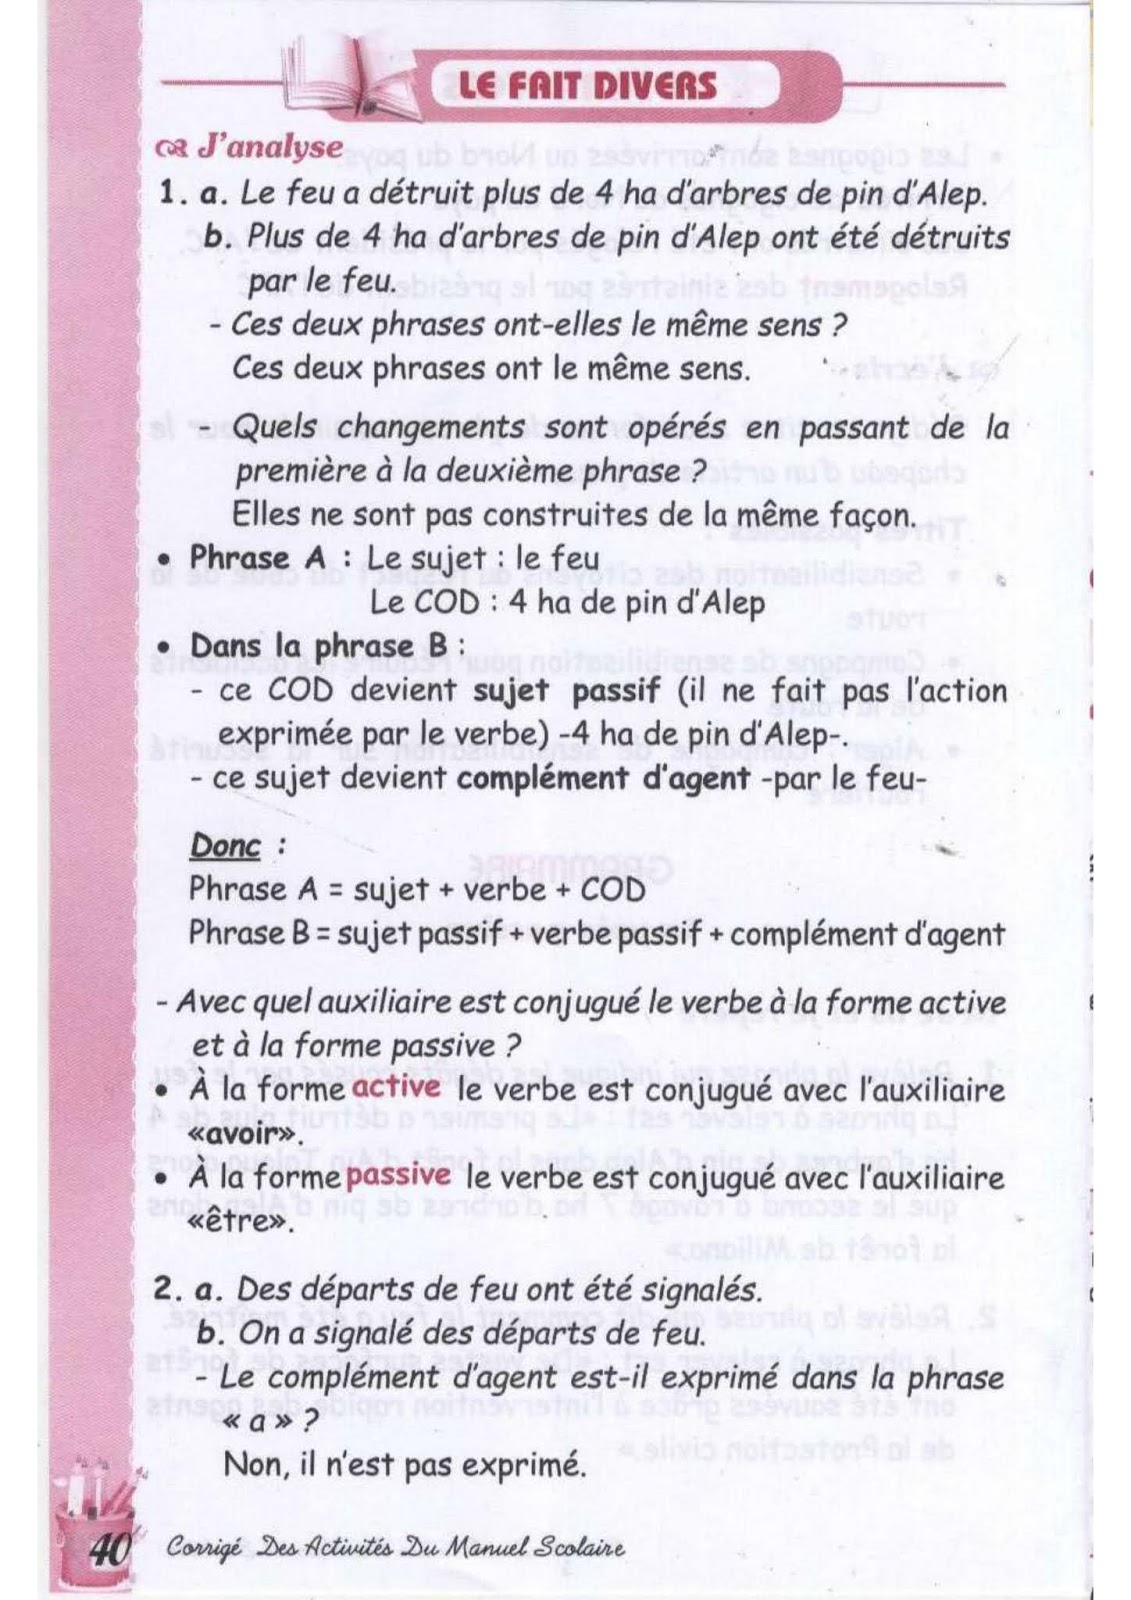 حل تمارين صفحة 39 الفرنسية للسنة الثالثة متوسط - الجيل الثاني